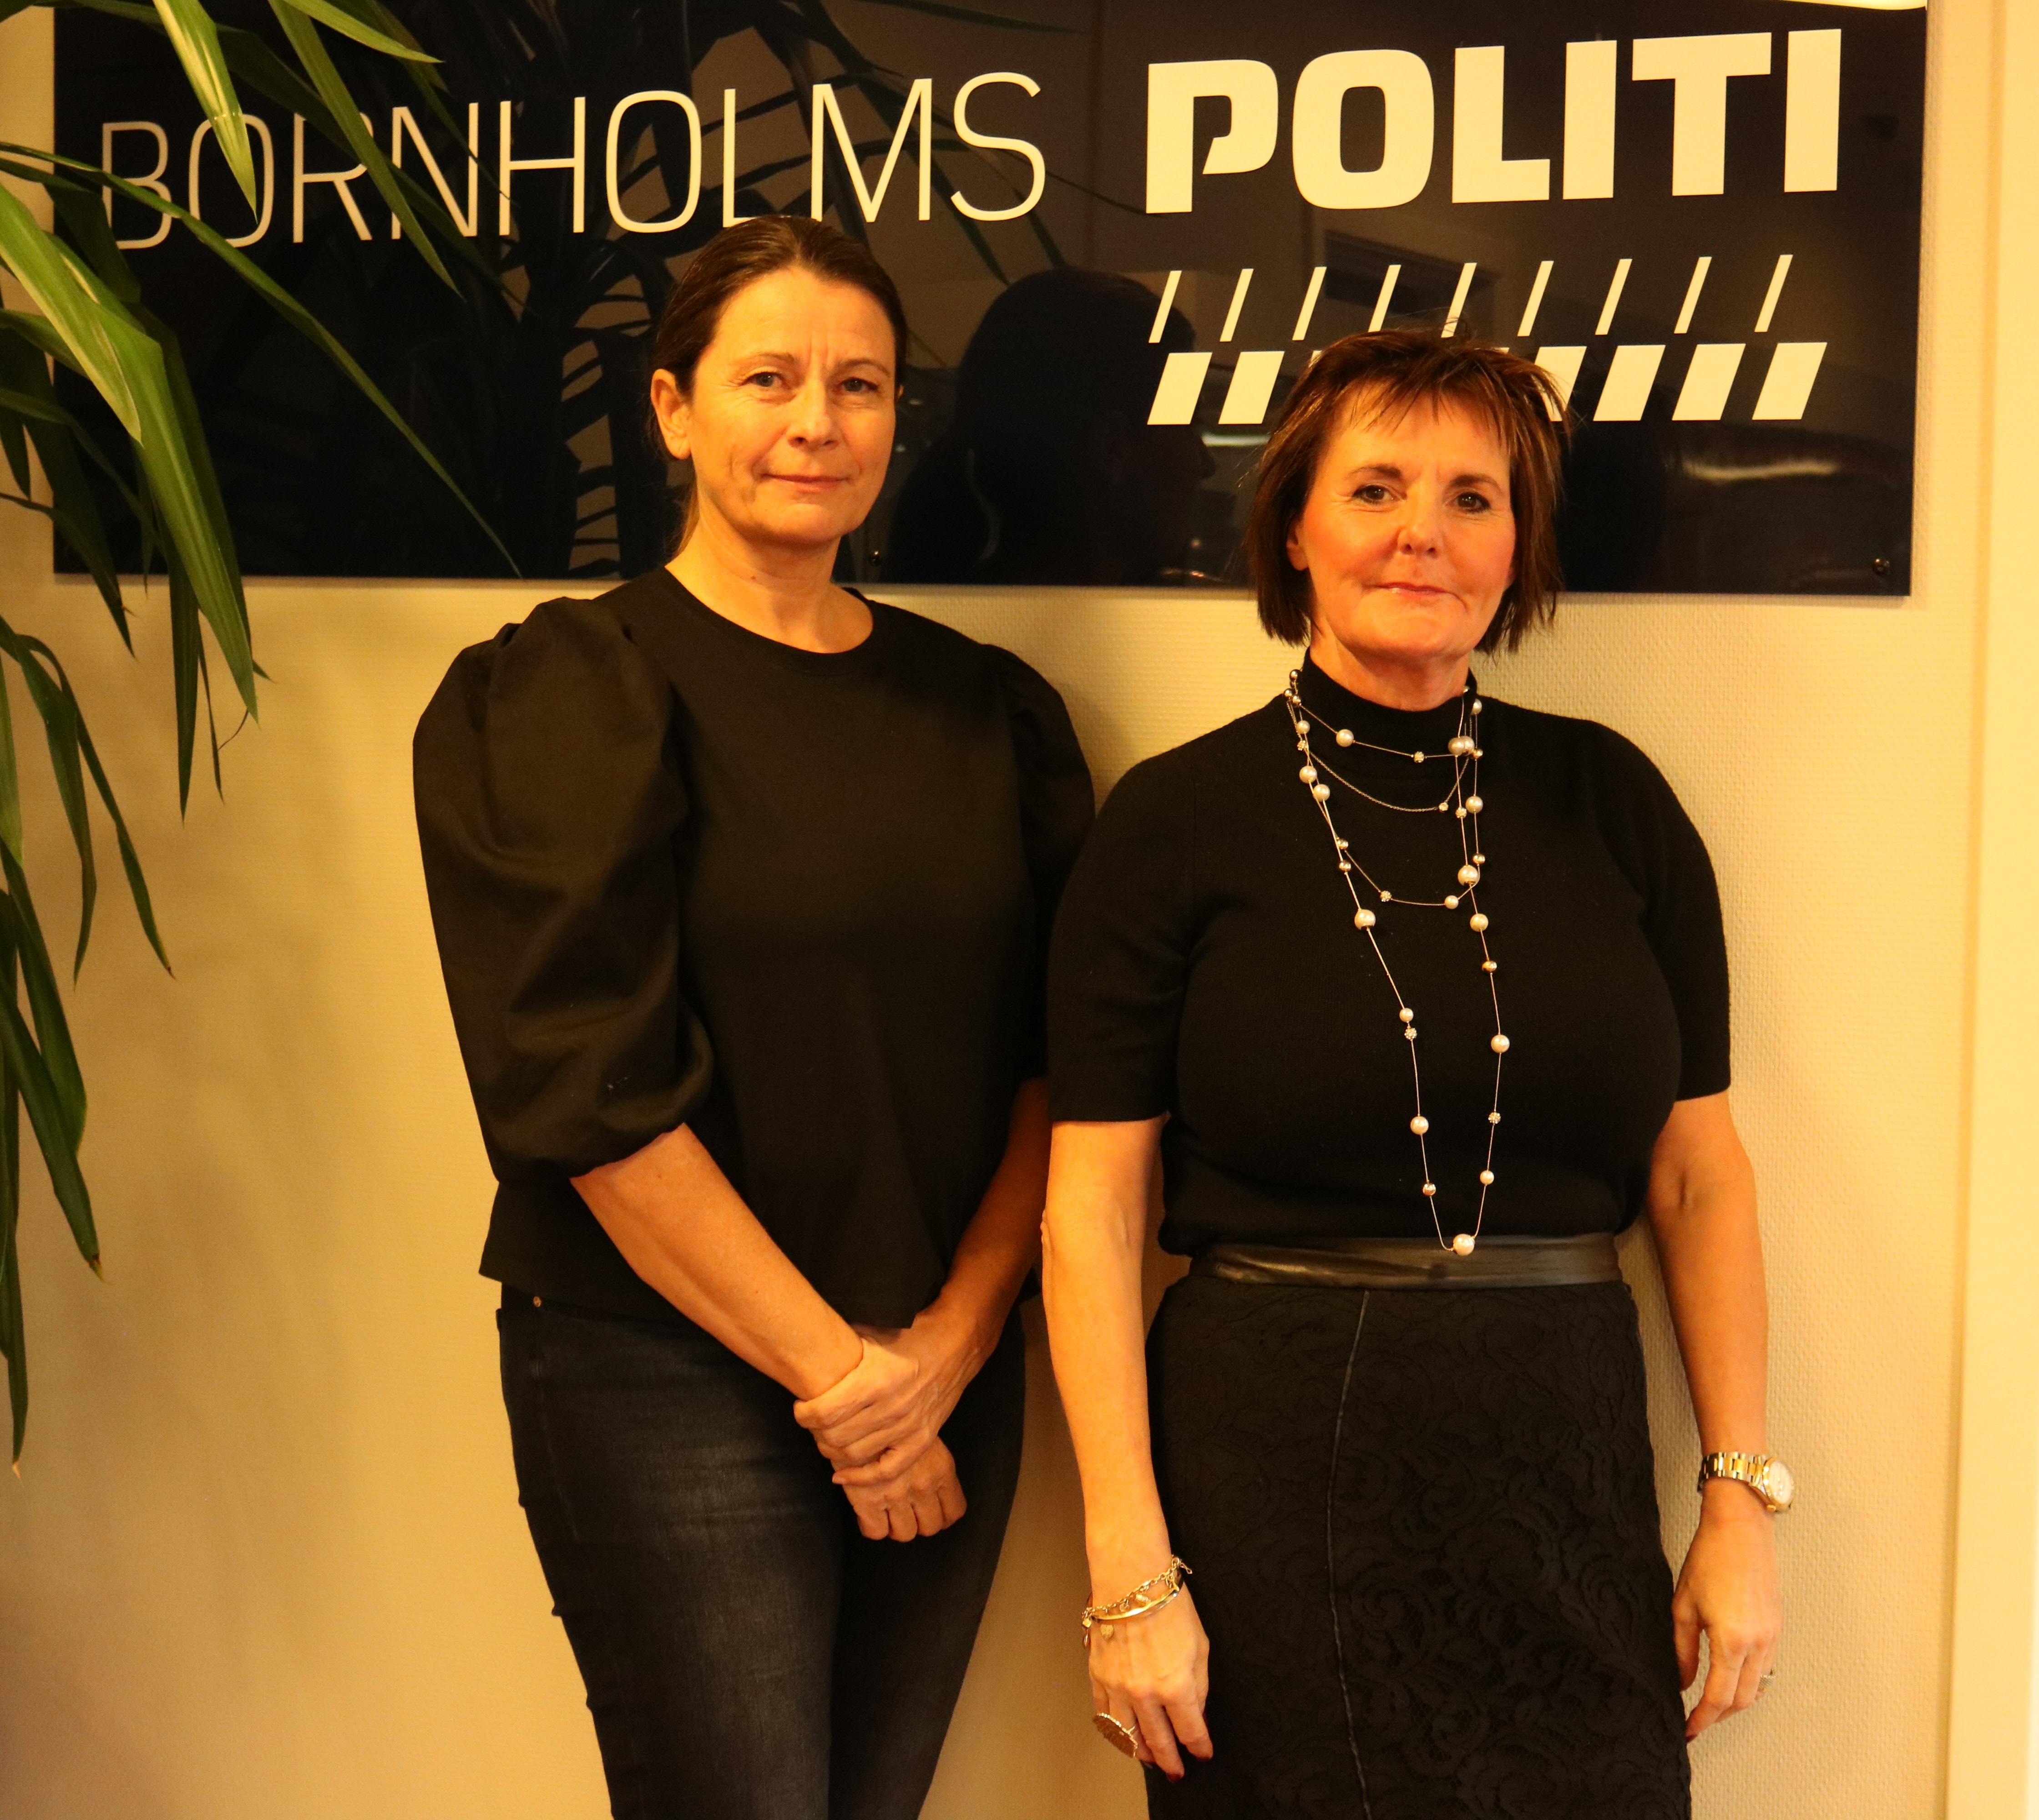 Bornholms Politi